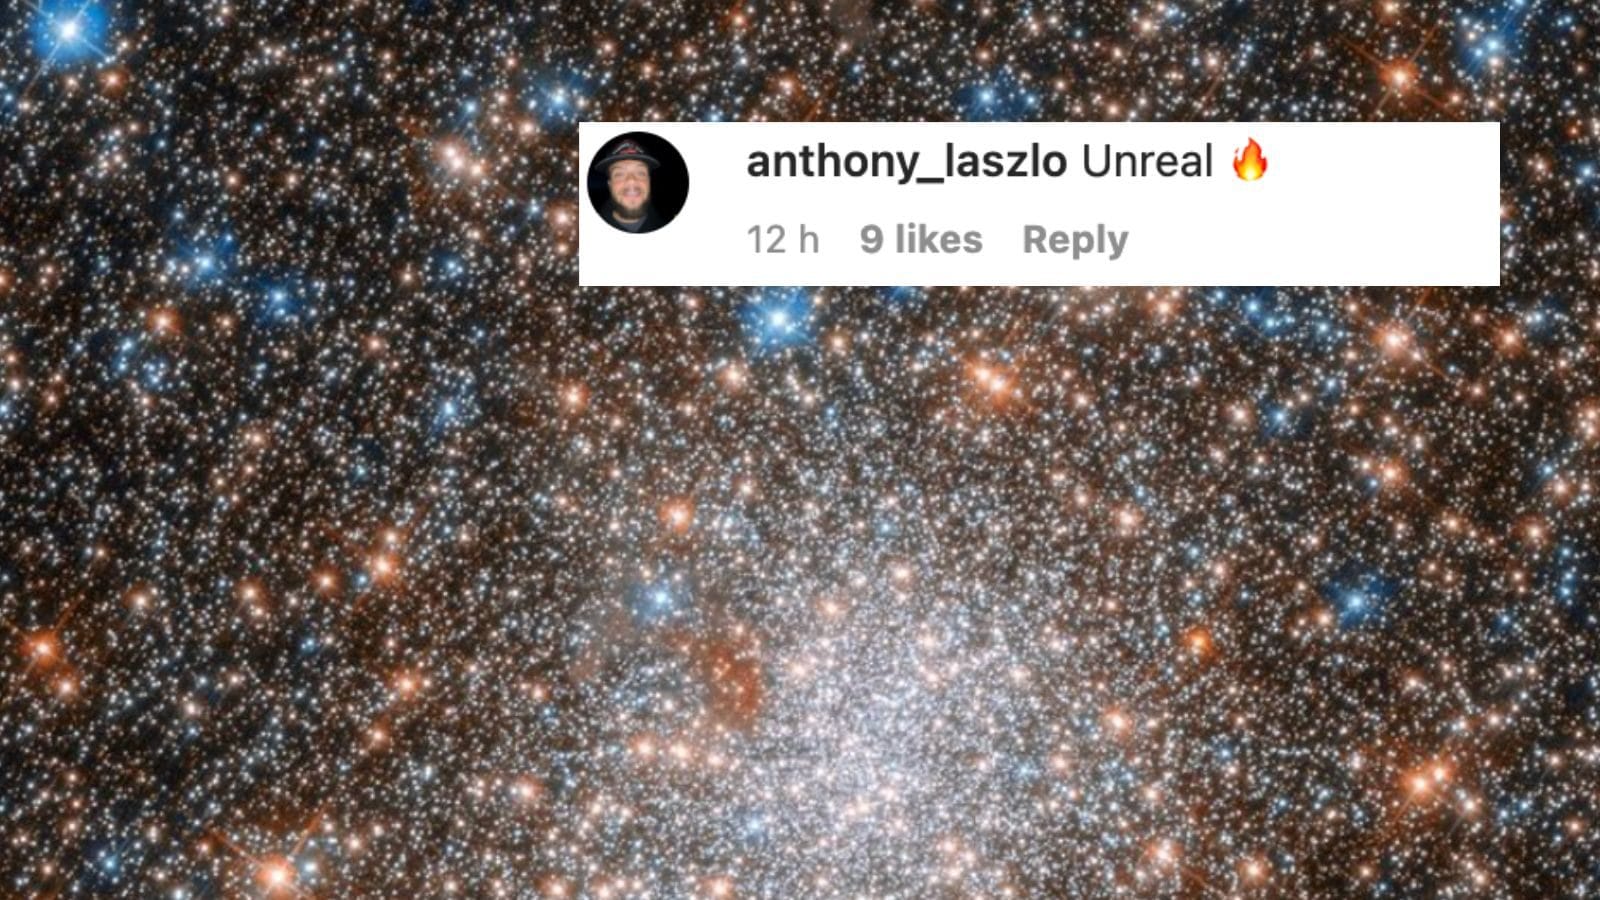 La NASA pubblica un’immagine da sogno di un ammasso di stelle scintillanti durante il Labor Day e i netizen lo chiamano “Unreal”